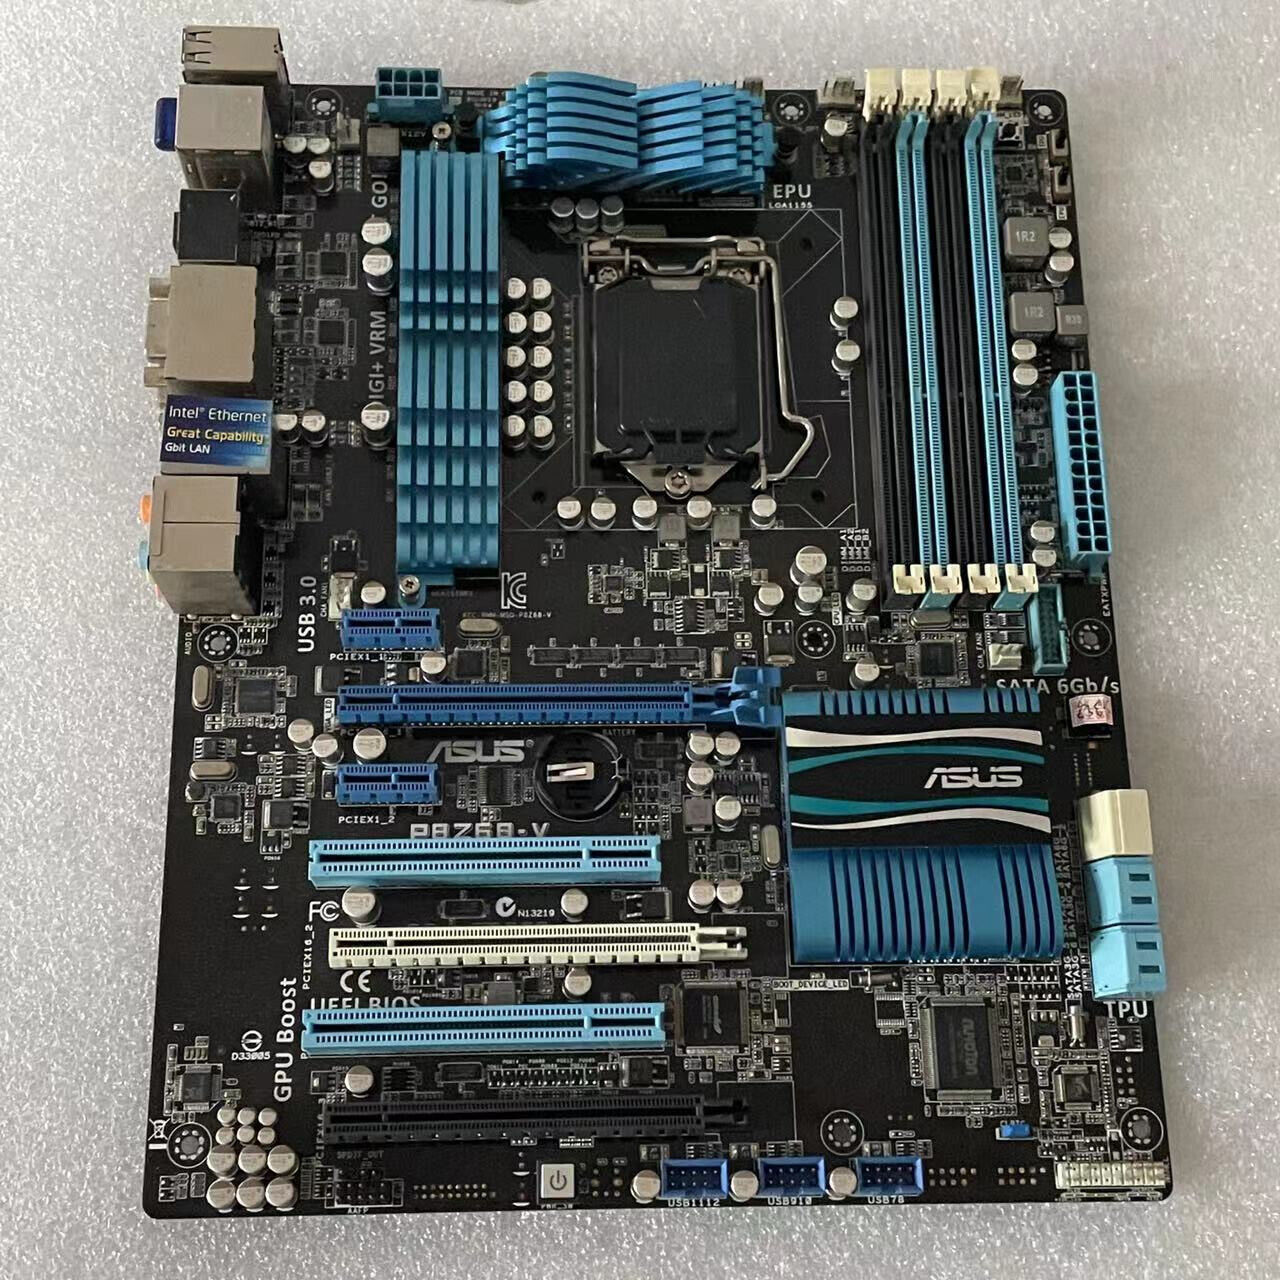 ASUS P8Z68-V Motherboard Mainboard Intel Z68 LGA1155 DDR3 VGA With a I/O